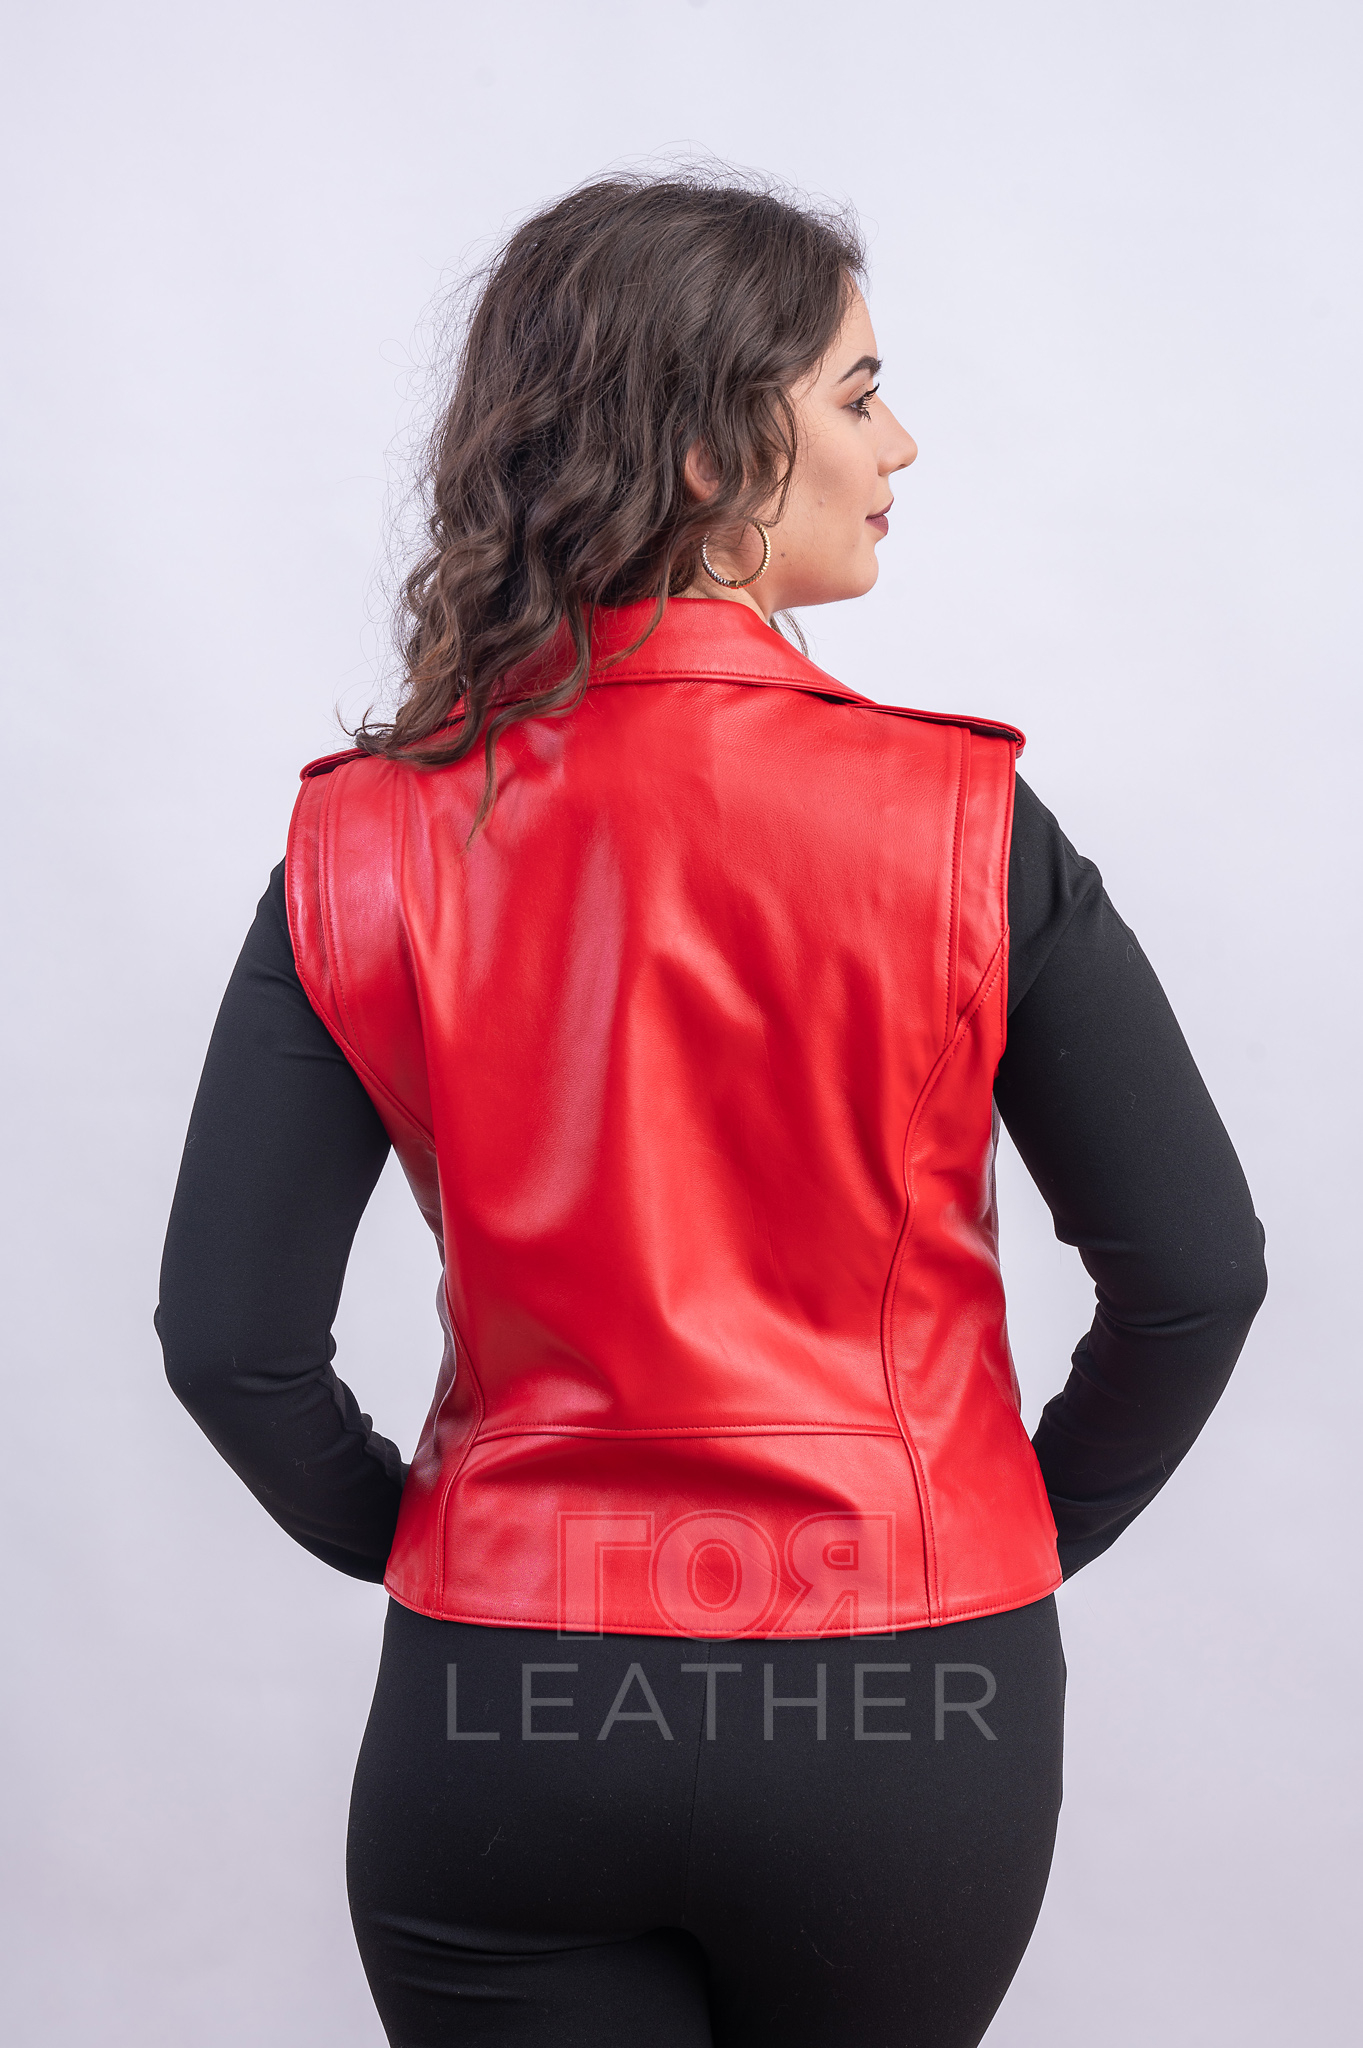 Дамски кожен байкър елек от ГОЯ Leather. Нов модел елек от 100% естествена кожа.